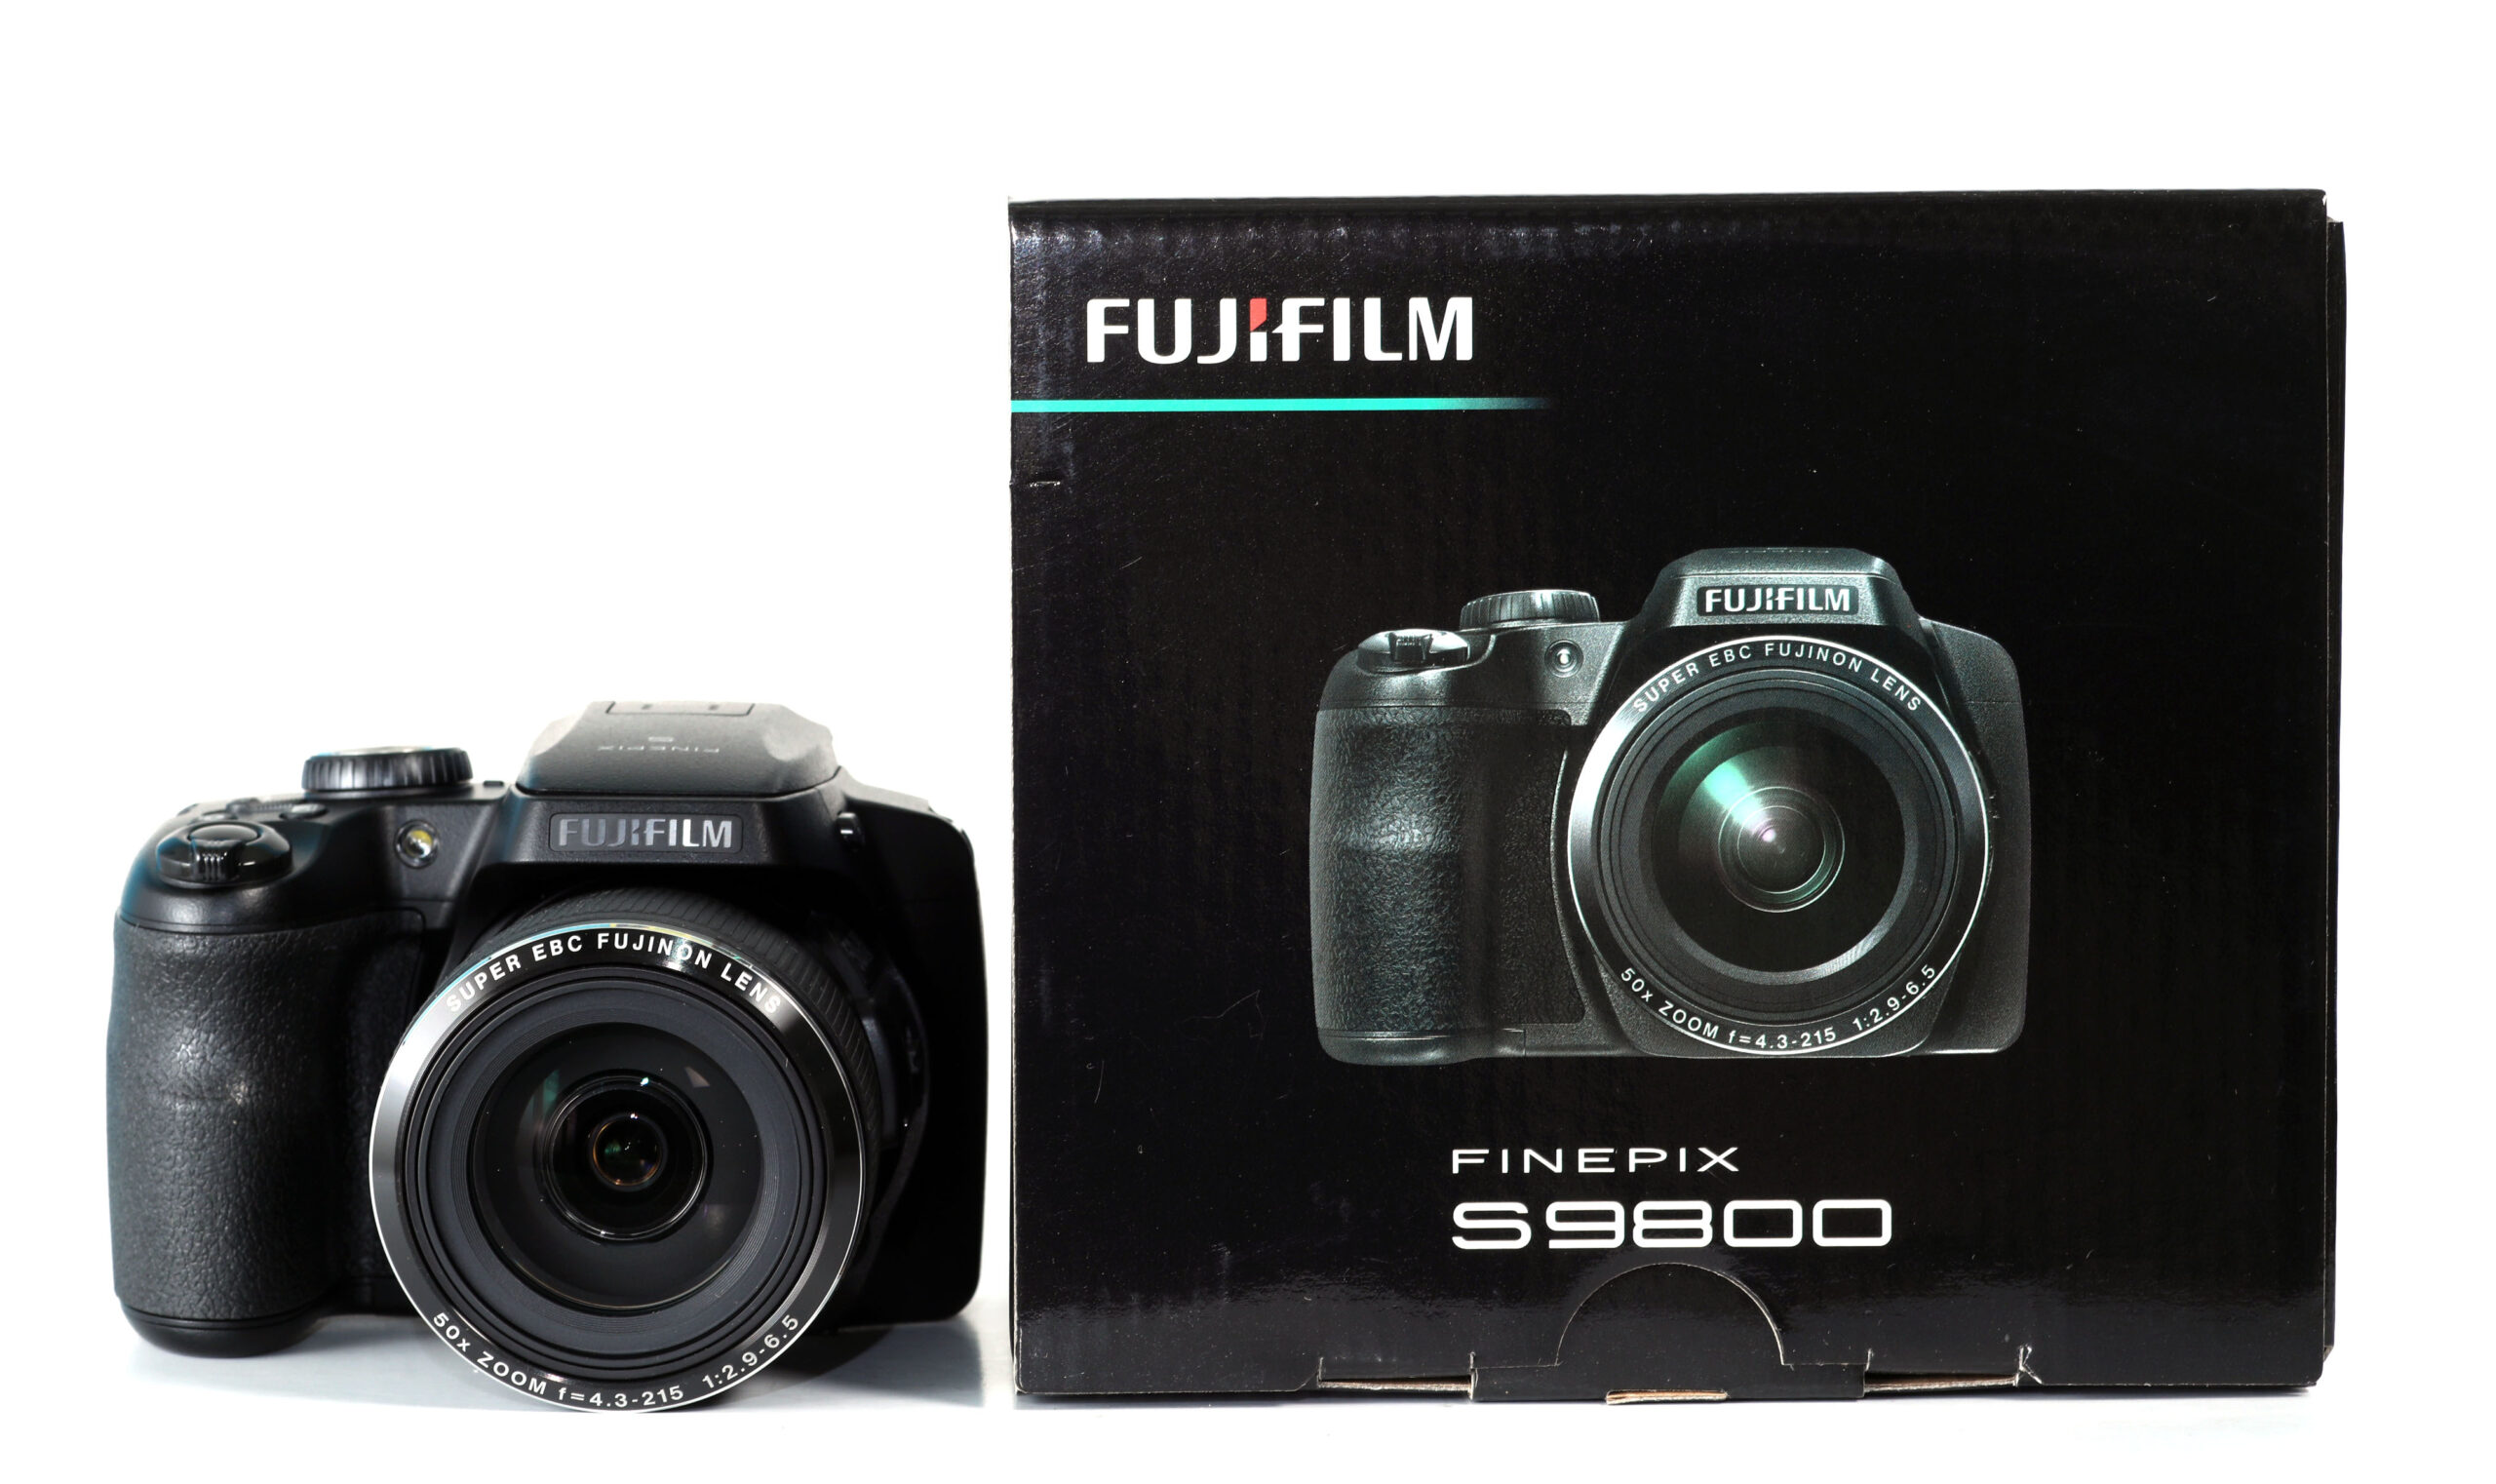 FUJIFILM Finepix S9800